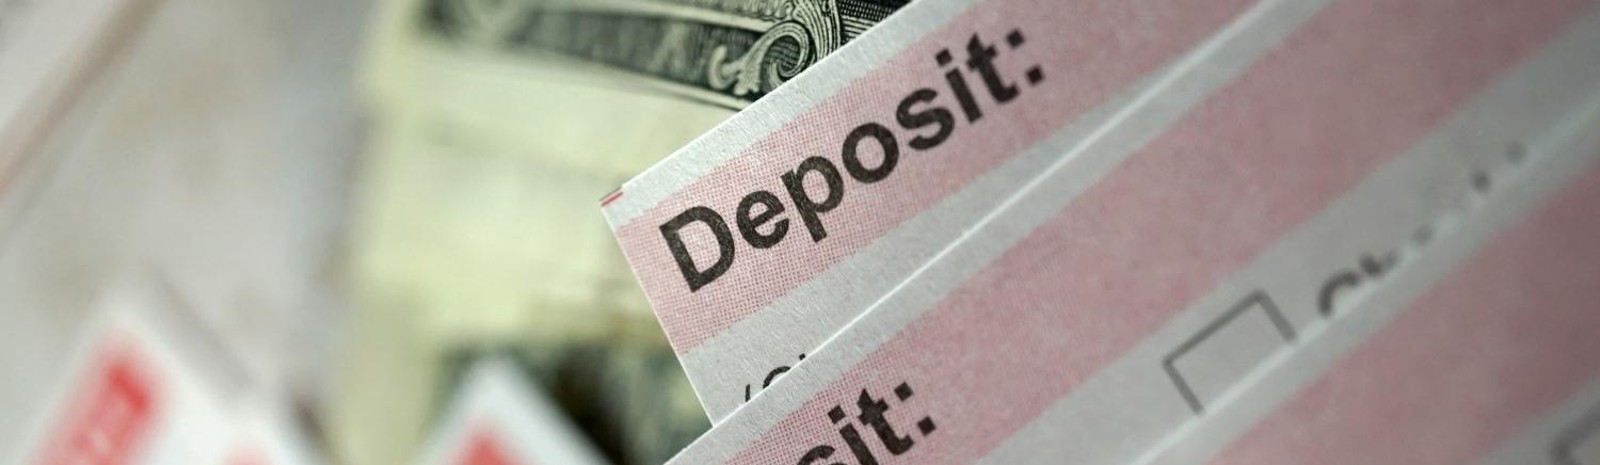 Deposit slip and cash.